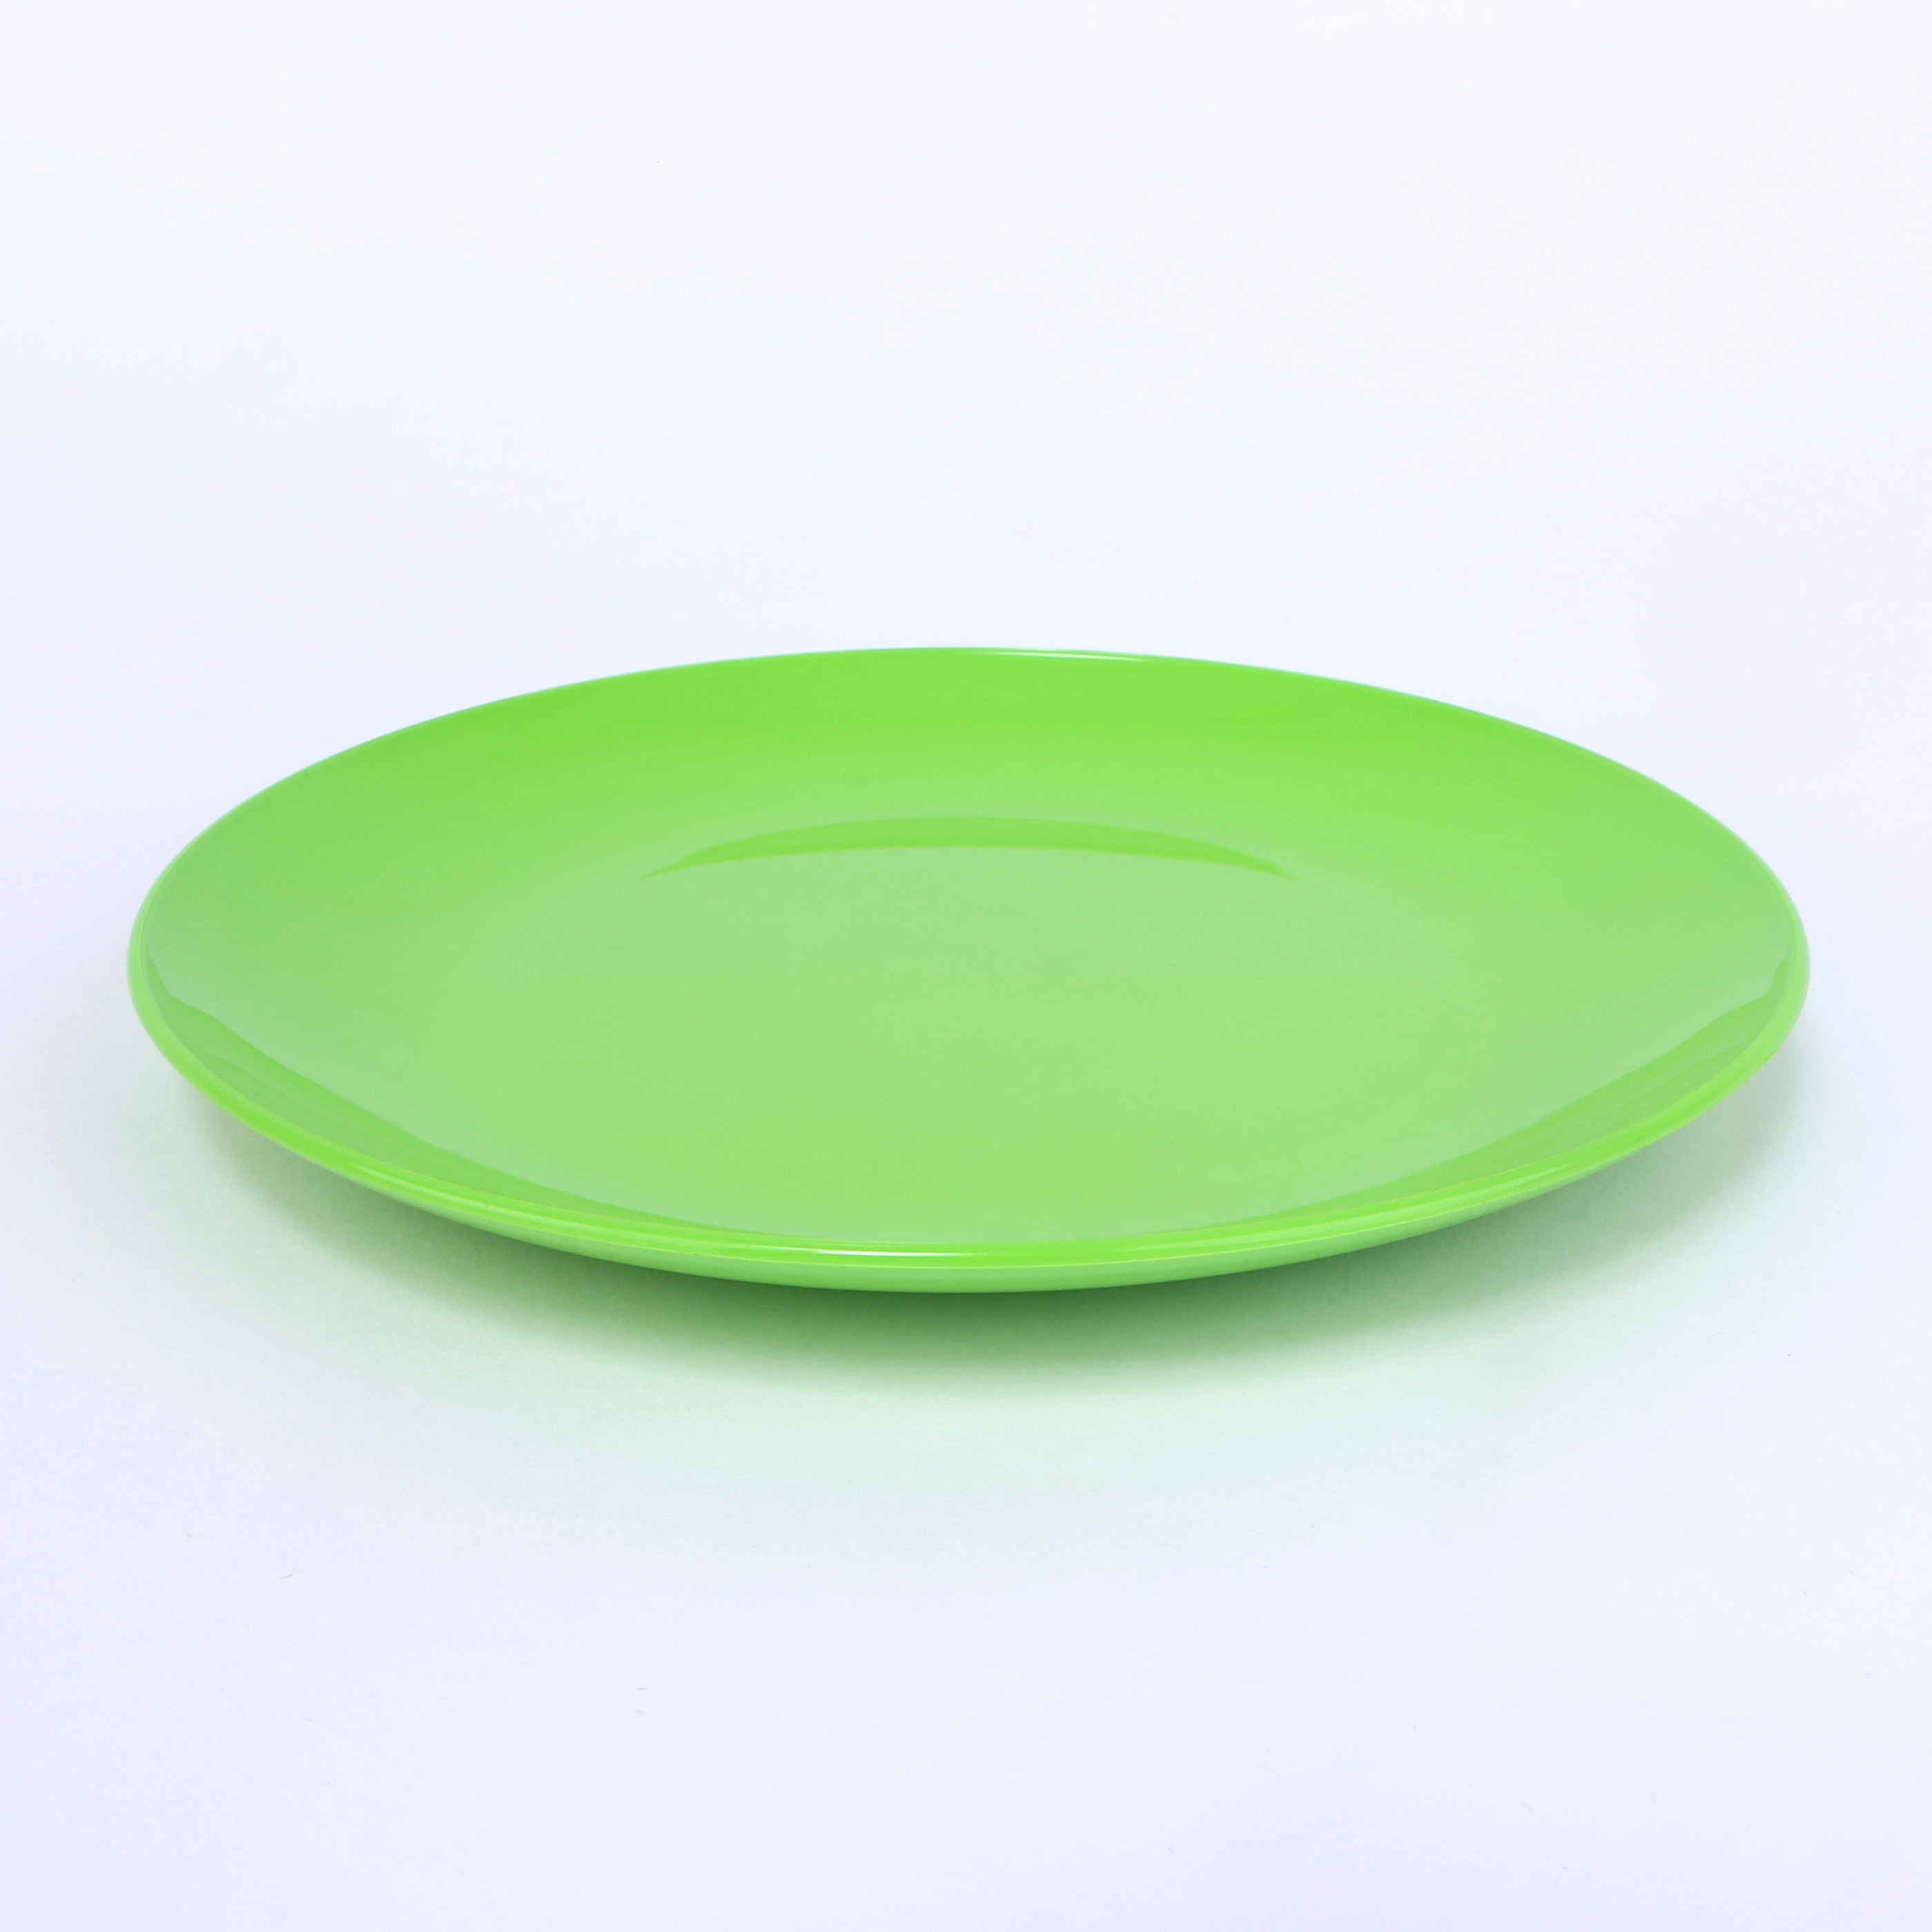 vaLon Dessertteller 19 cm aus schadstofffreiem Kunststoff in der Farbe grasgrün.